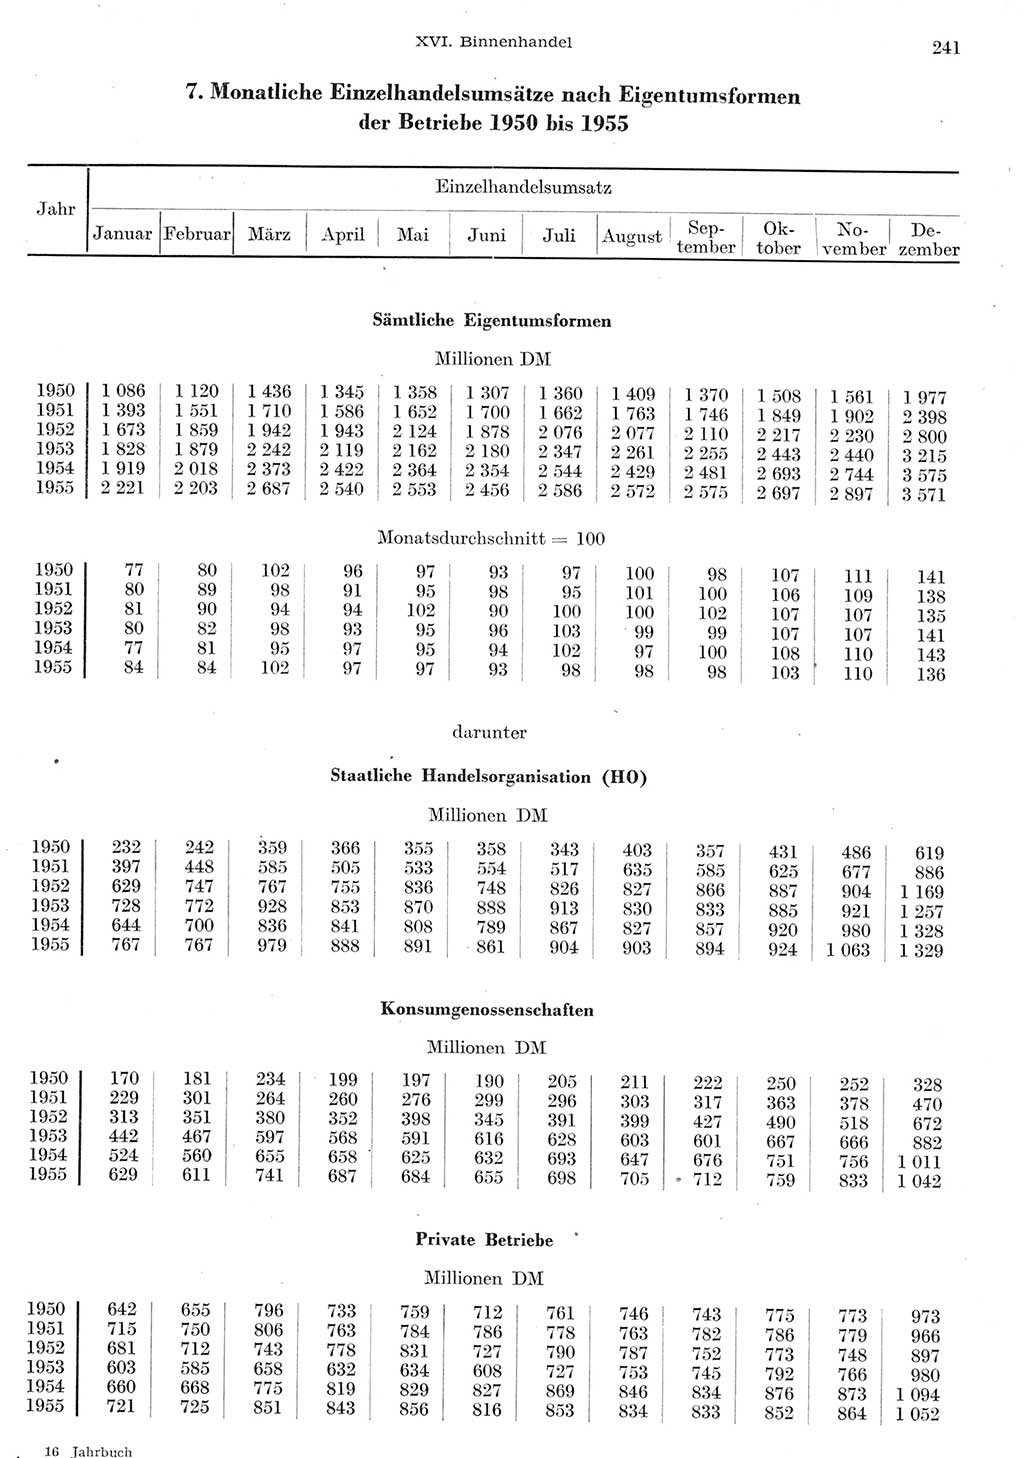 Statistisches Jahrbuch der Deutschen Demokratischen Republik (DDR) 1955, Seite 241 (Stat. Jb. DDR 1955, S. 241)